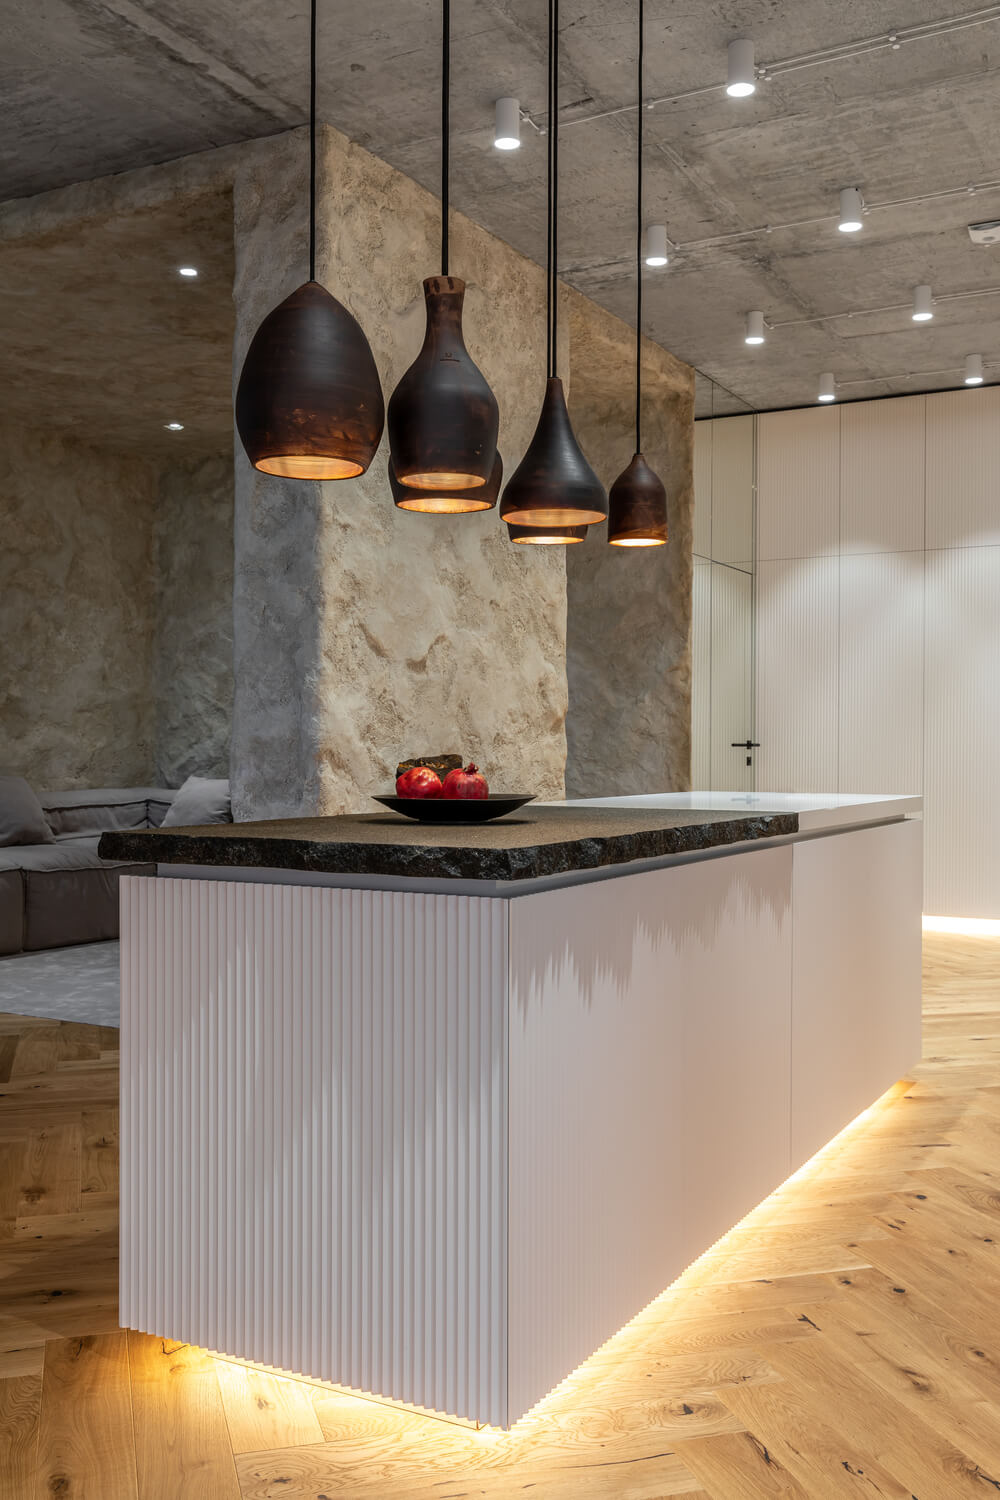 这是厨房岛的另一个视图，展示了更多的现代照明，它靠近客厅的墙壁。